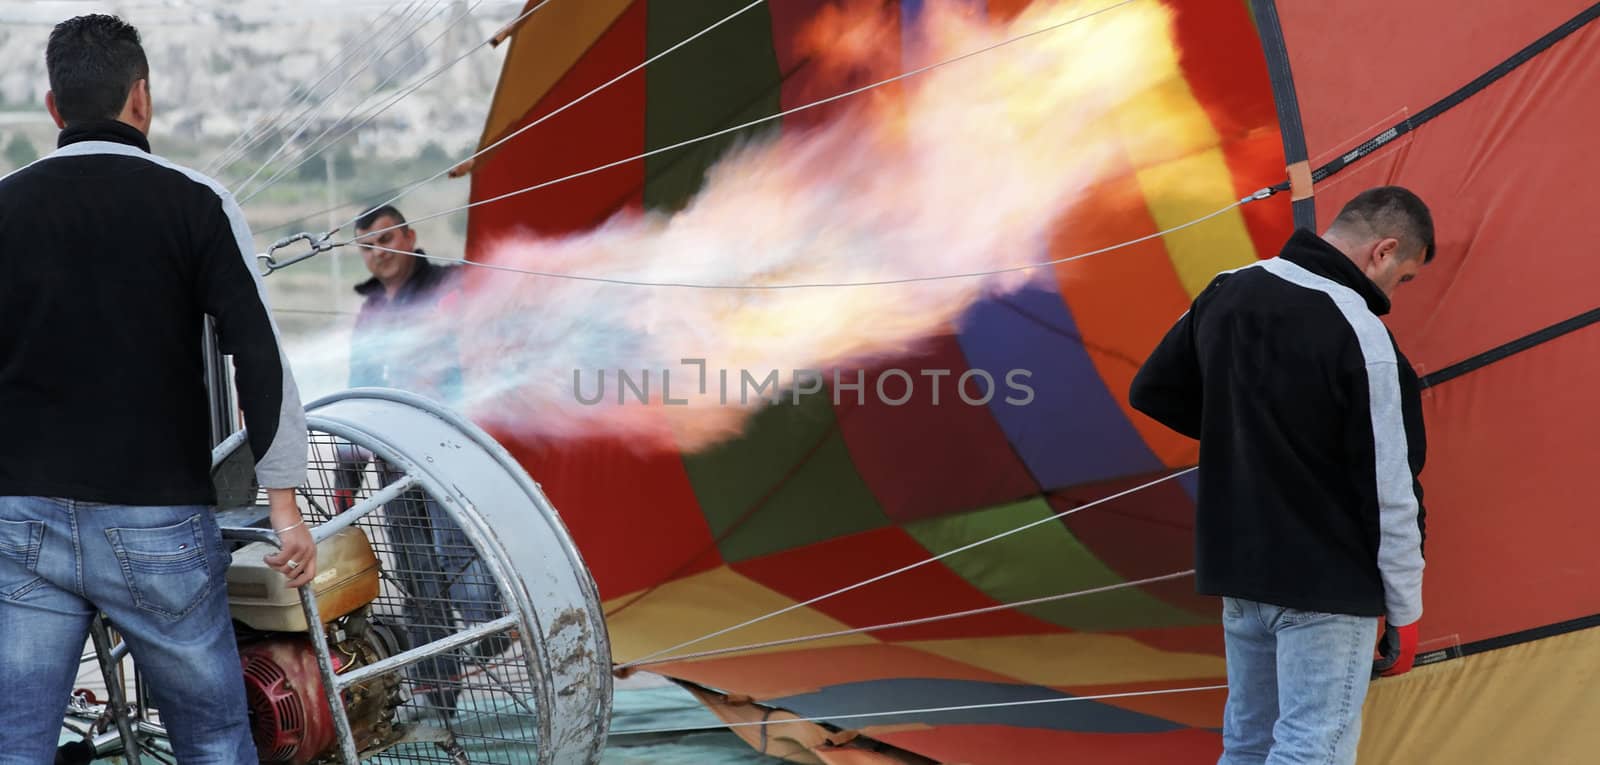 flames hot air balloon roadies getting ready by arfabita